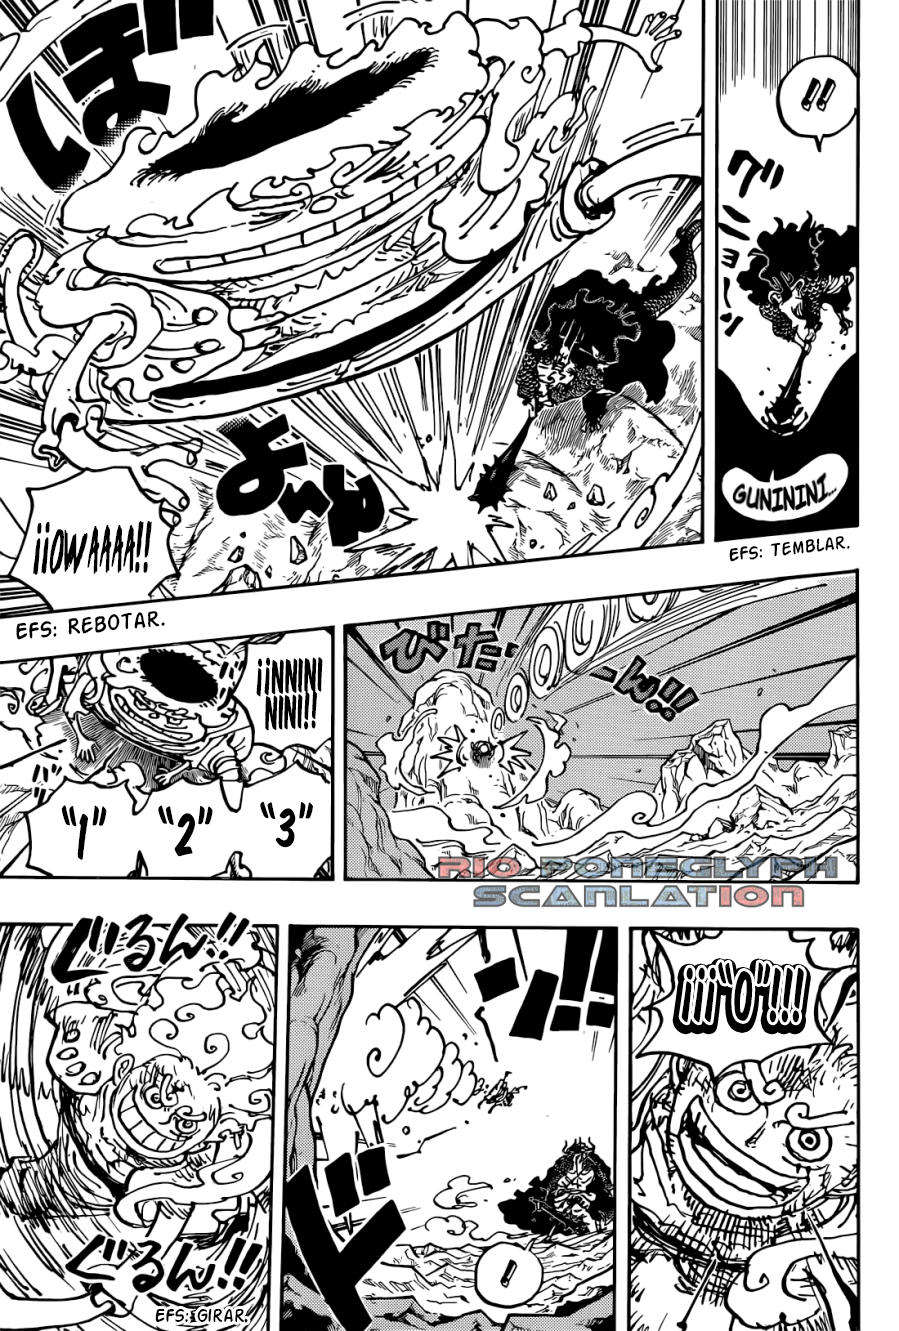 español - One Piece Manga 1045 [Español] [Rio Poneglyph Scans] 3ZEYngXx_o